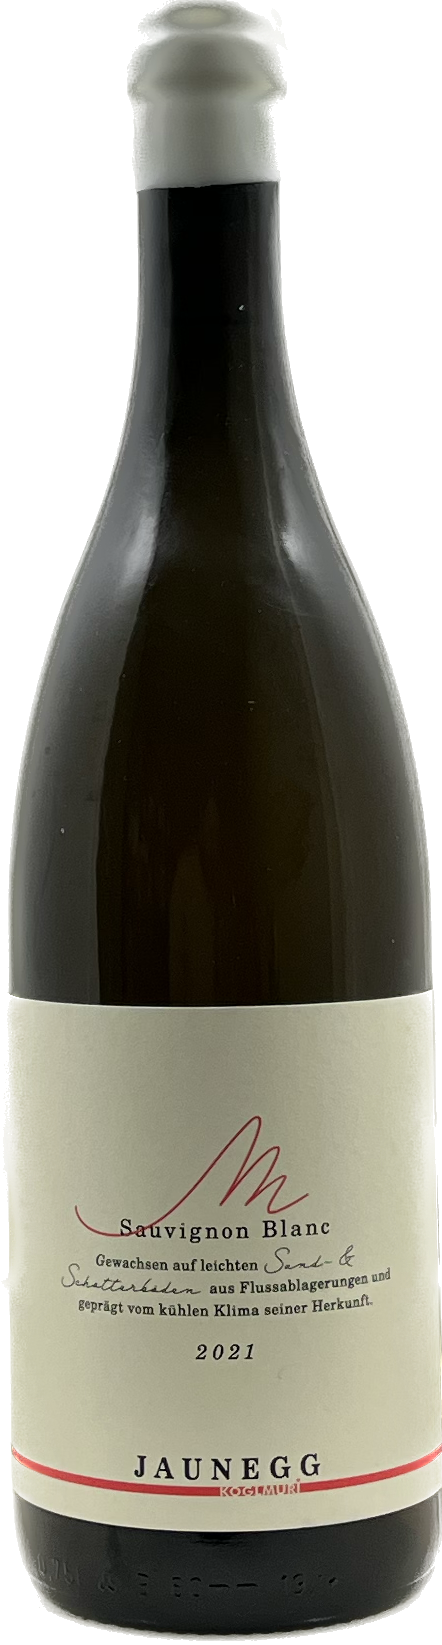 Sauvignon Blanc  Sand & Schotter  - Weingut Jaunegg 2021